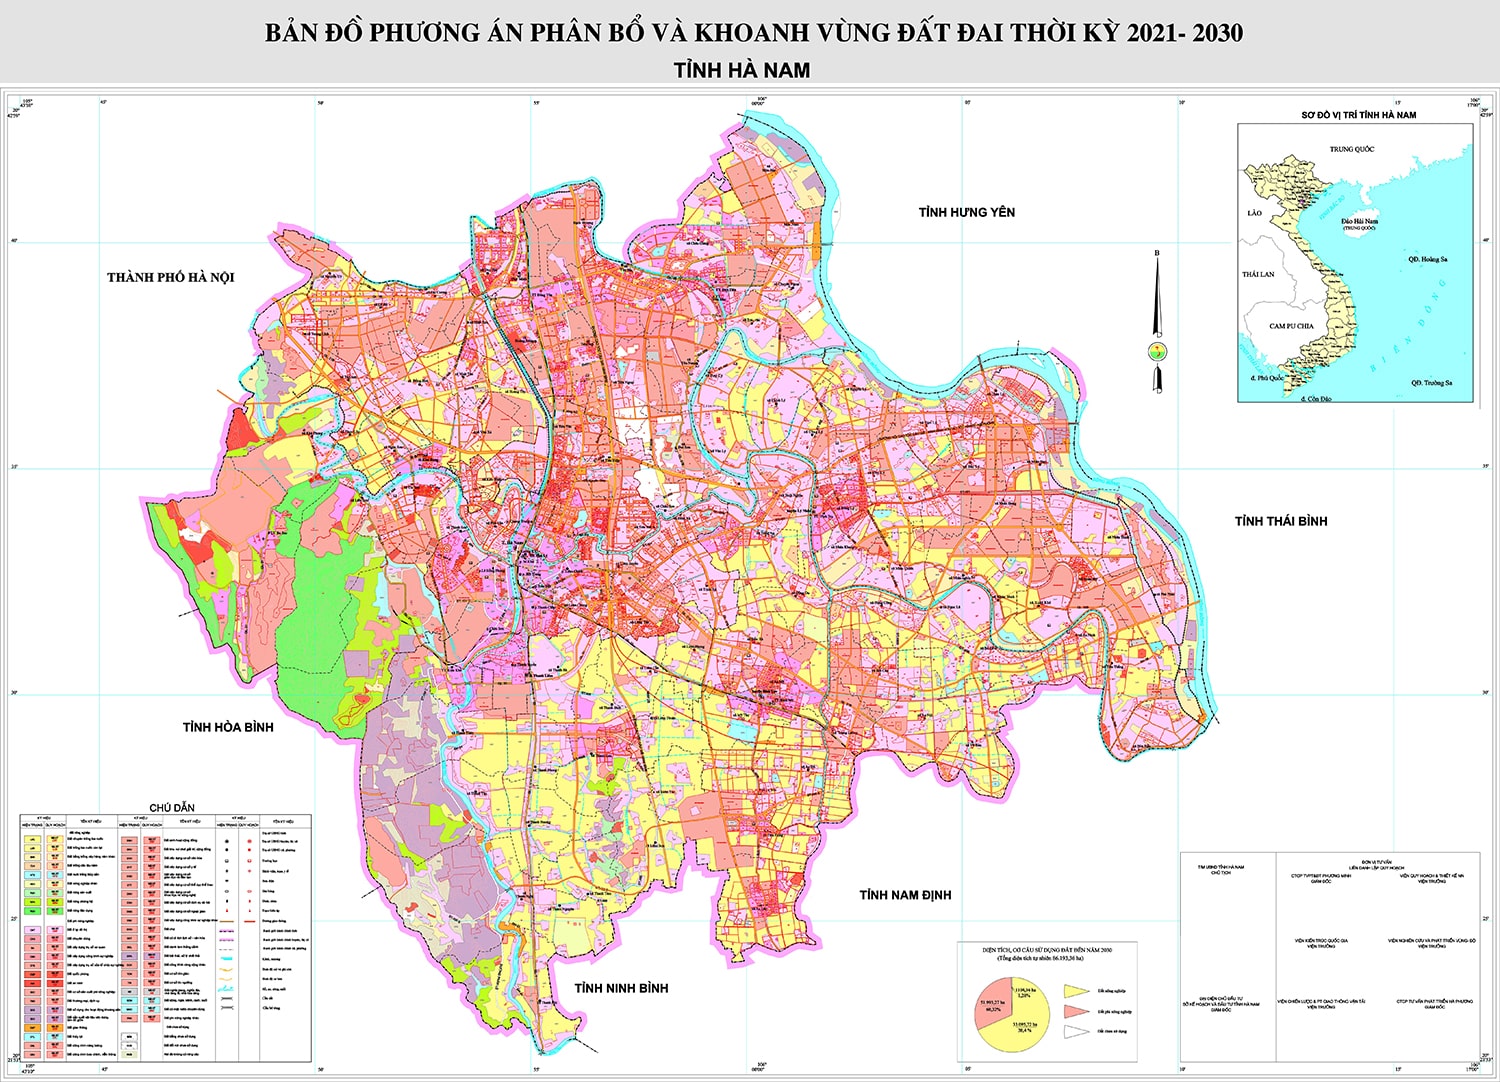 Phương án quy hoạch sử dụng đất tỉnh Hà Nam thời kỳ 2021 - 2030, tầm nhìn năm 2050